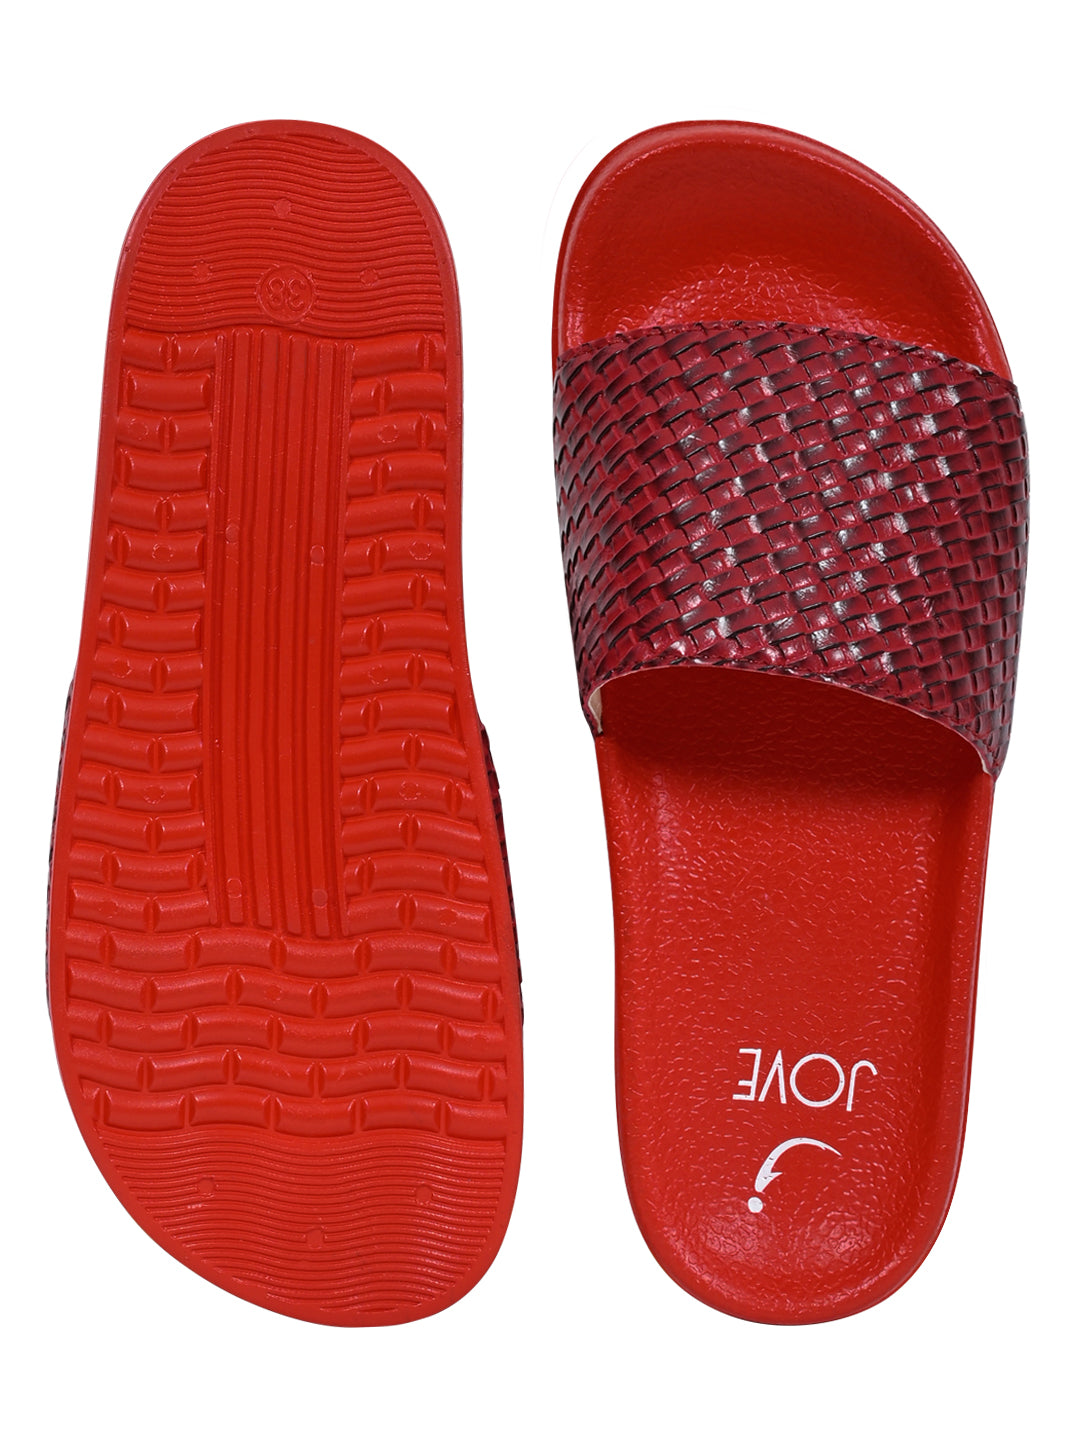 Footwear, Women Footwear, Red Slides